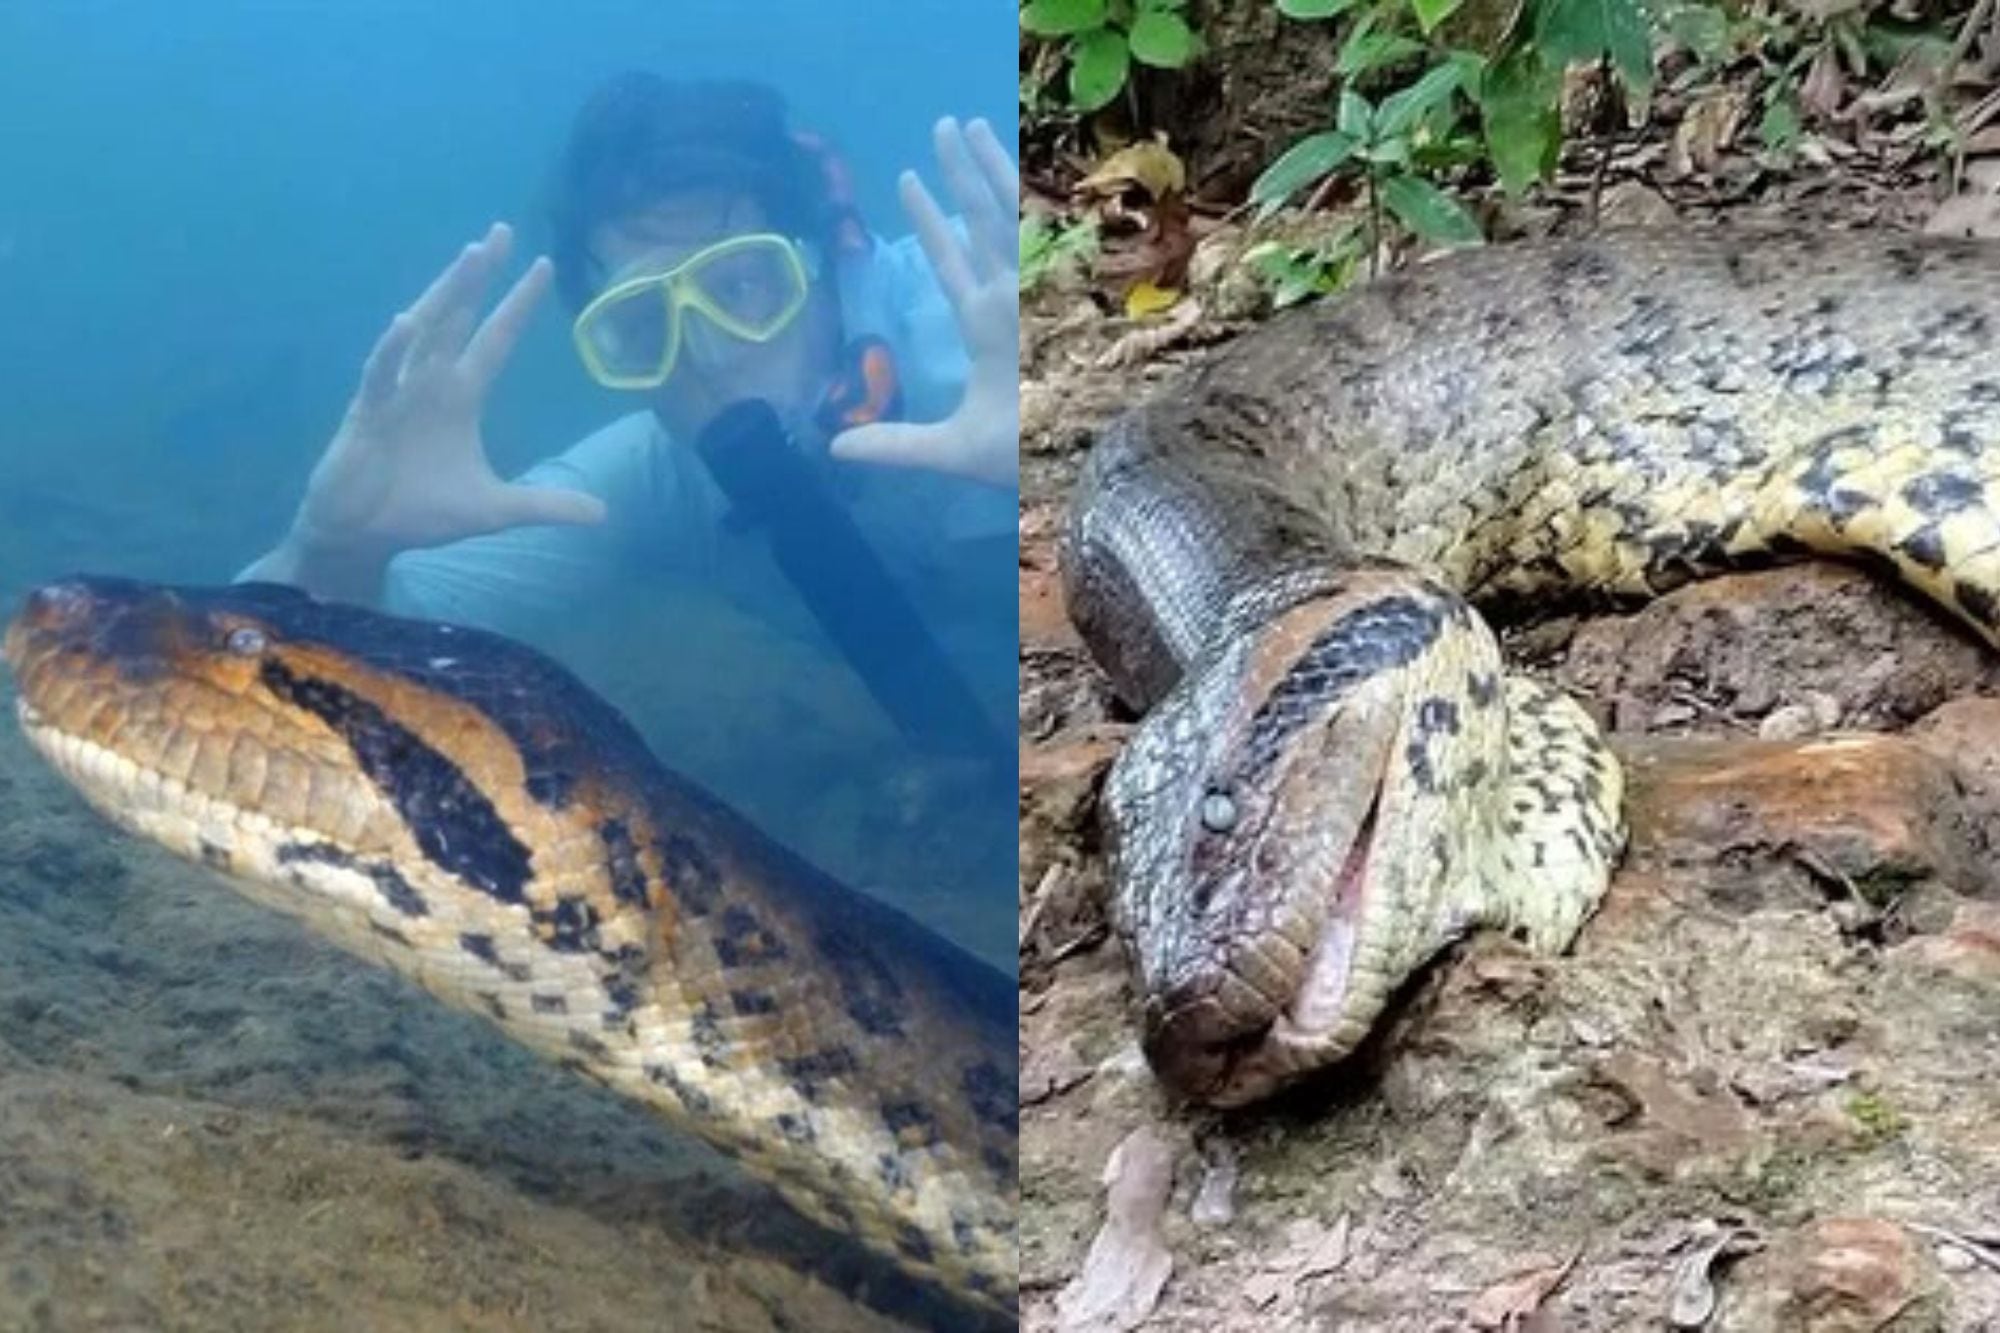 Murió la anaconda más grande del mundo, que fue descubierta en el Amazonas hace semanas